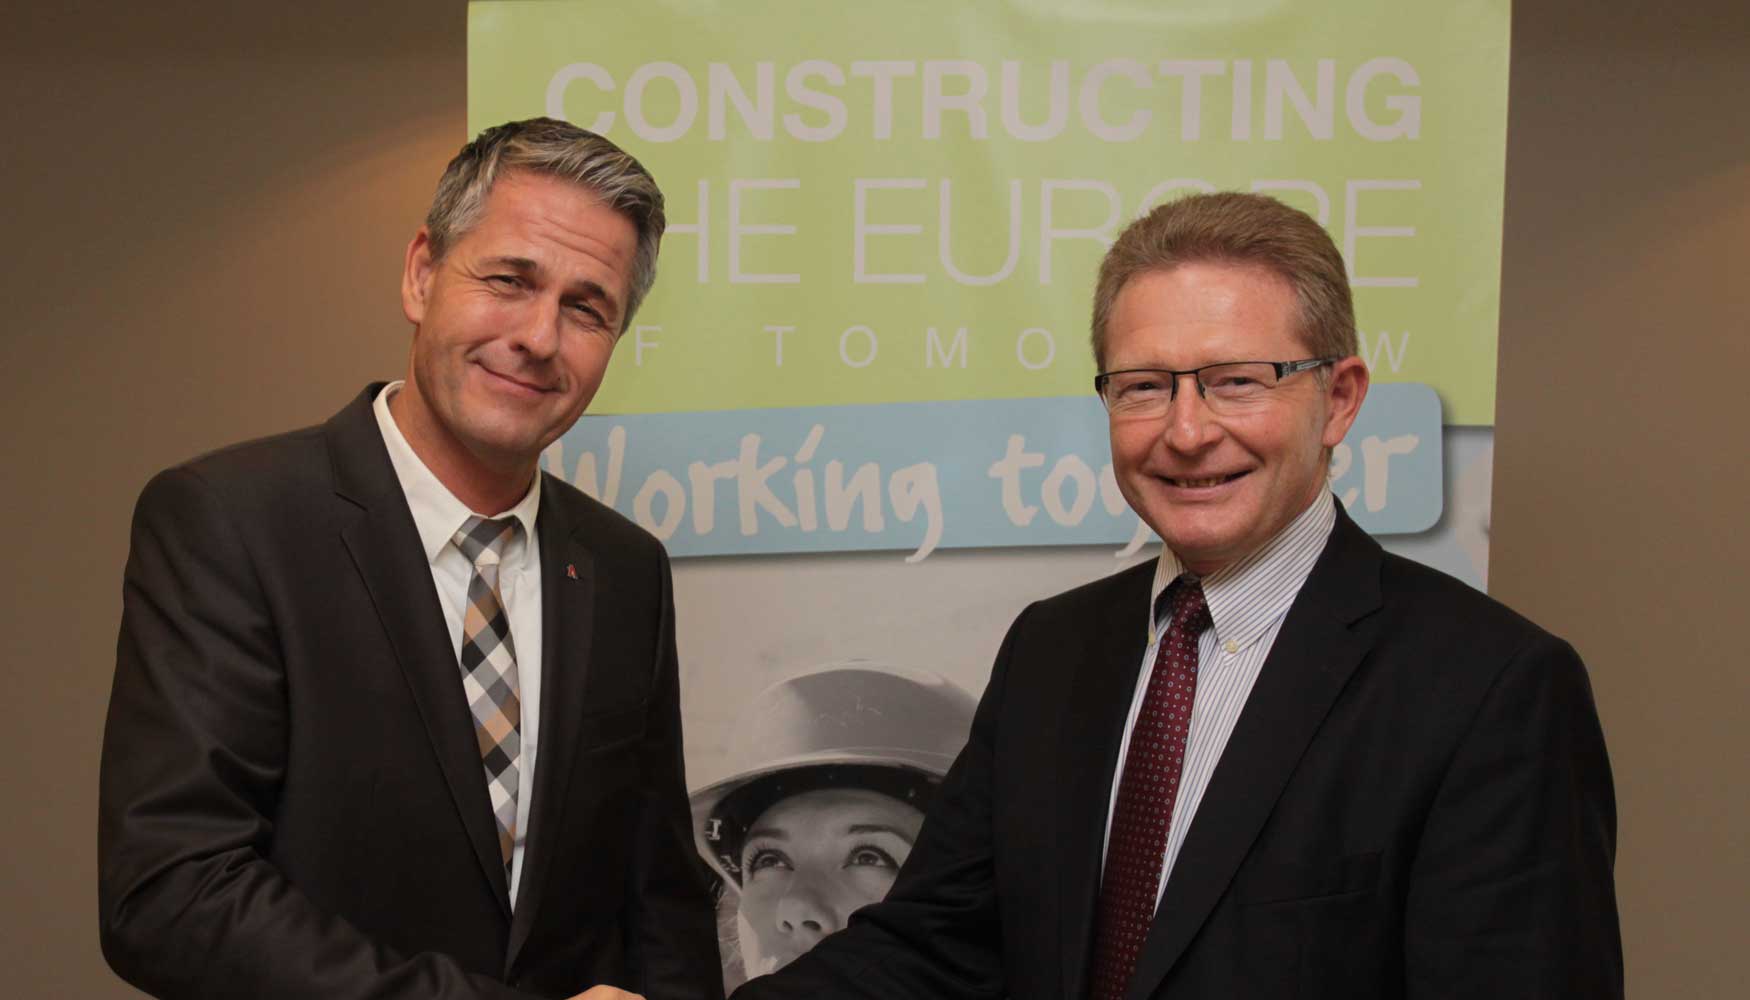 Bernd Holz (izquierda) sustituye a Eric Lepine en la Presidencia de CECE